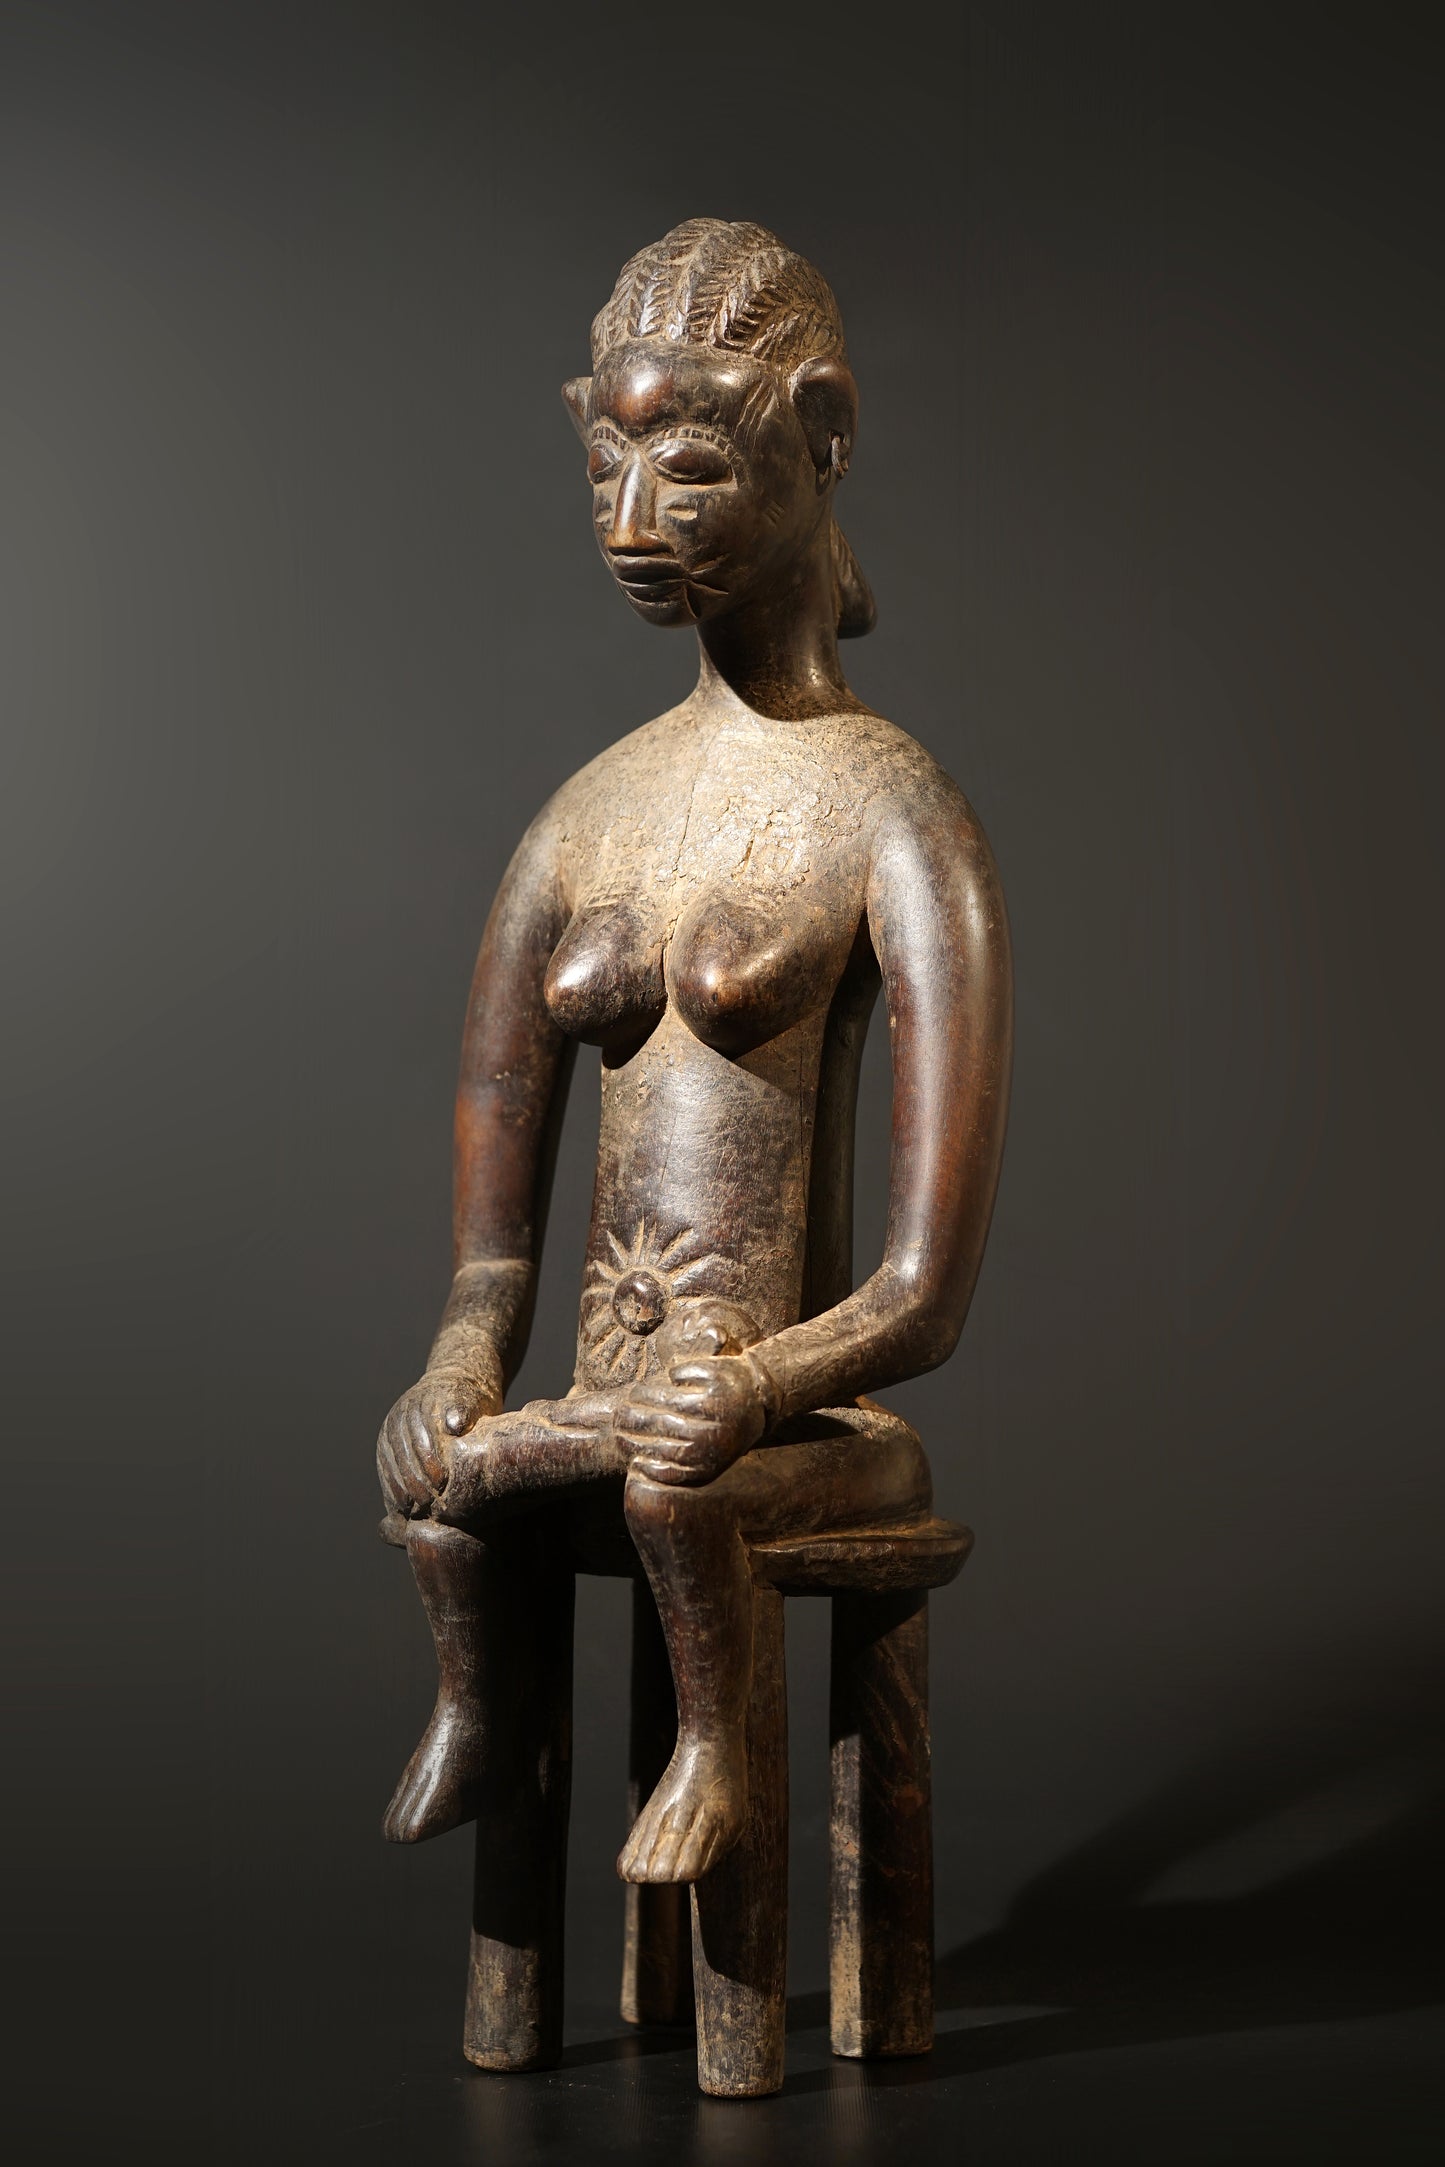 A female Senufo sculpture